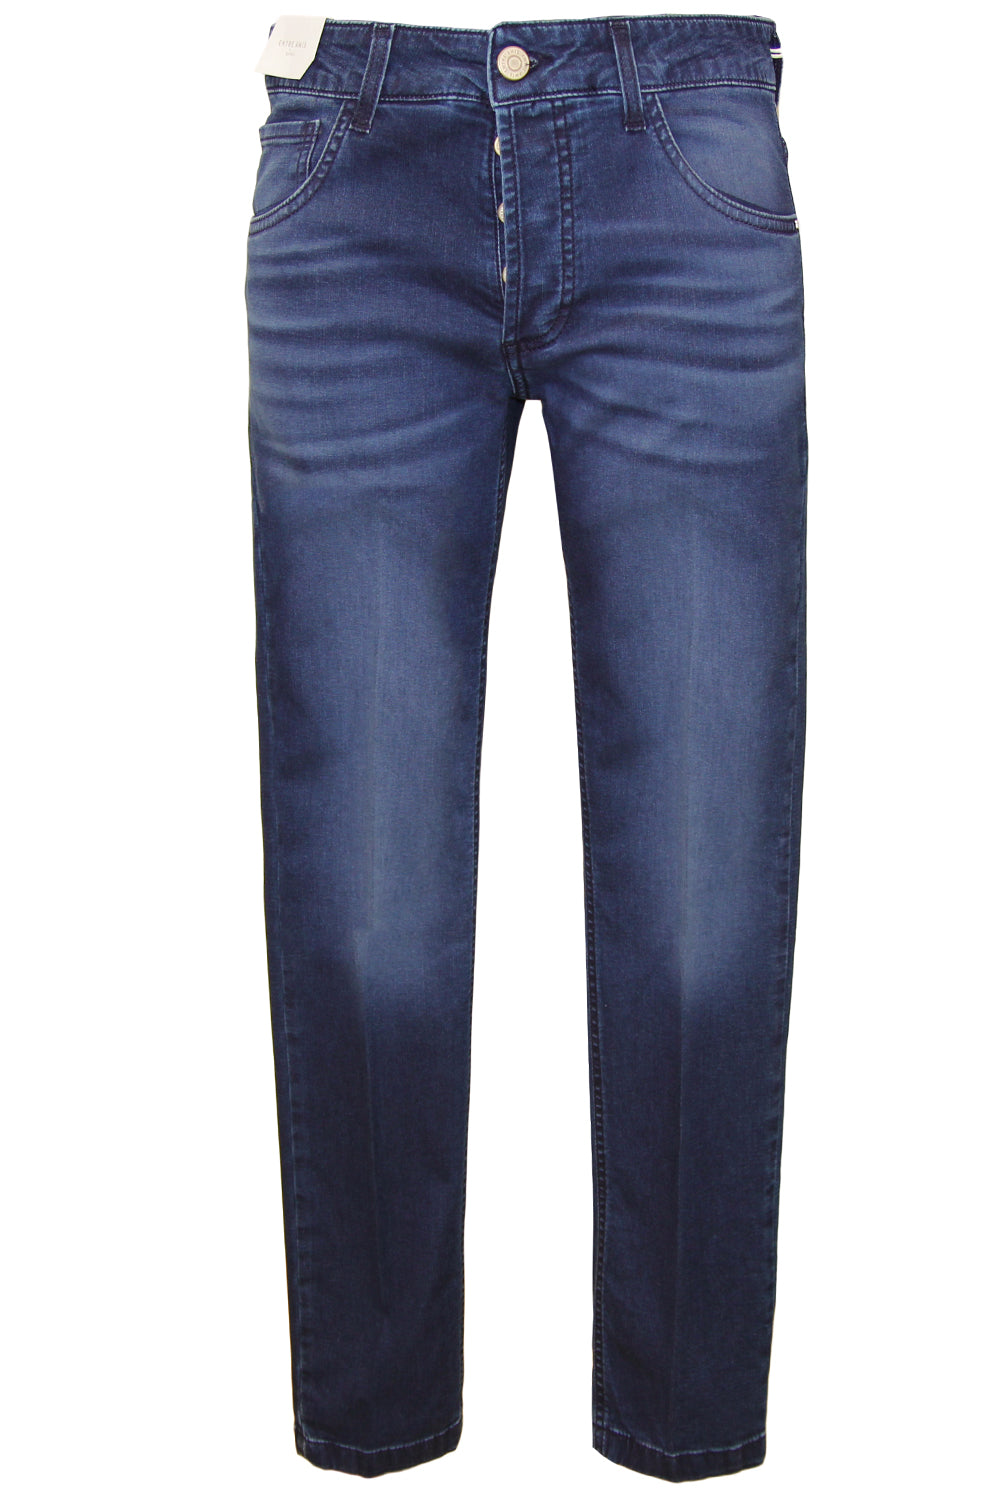 Image of ENTRE AMIS Jeans modello Capri